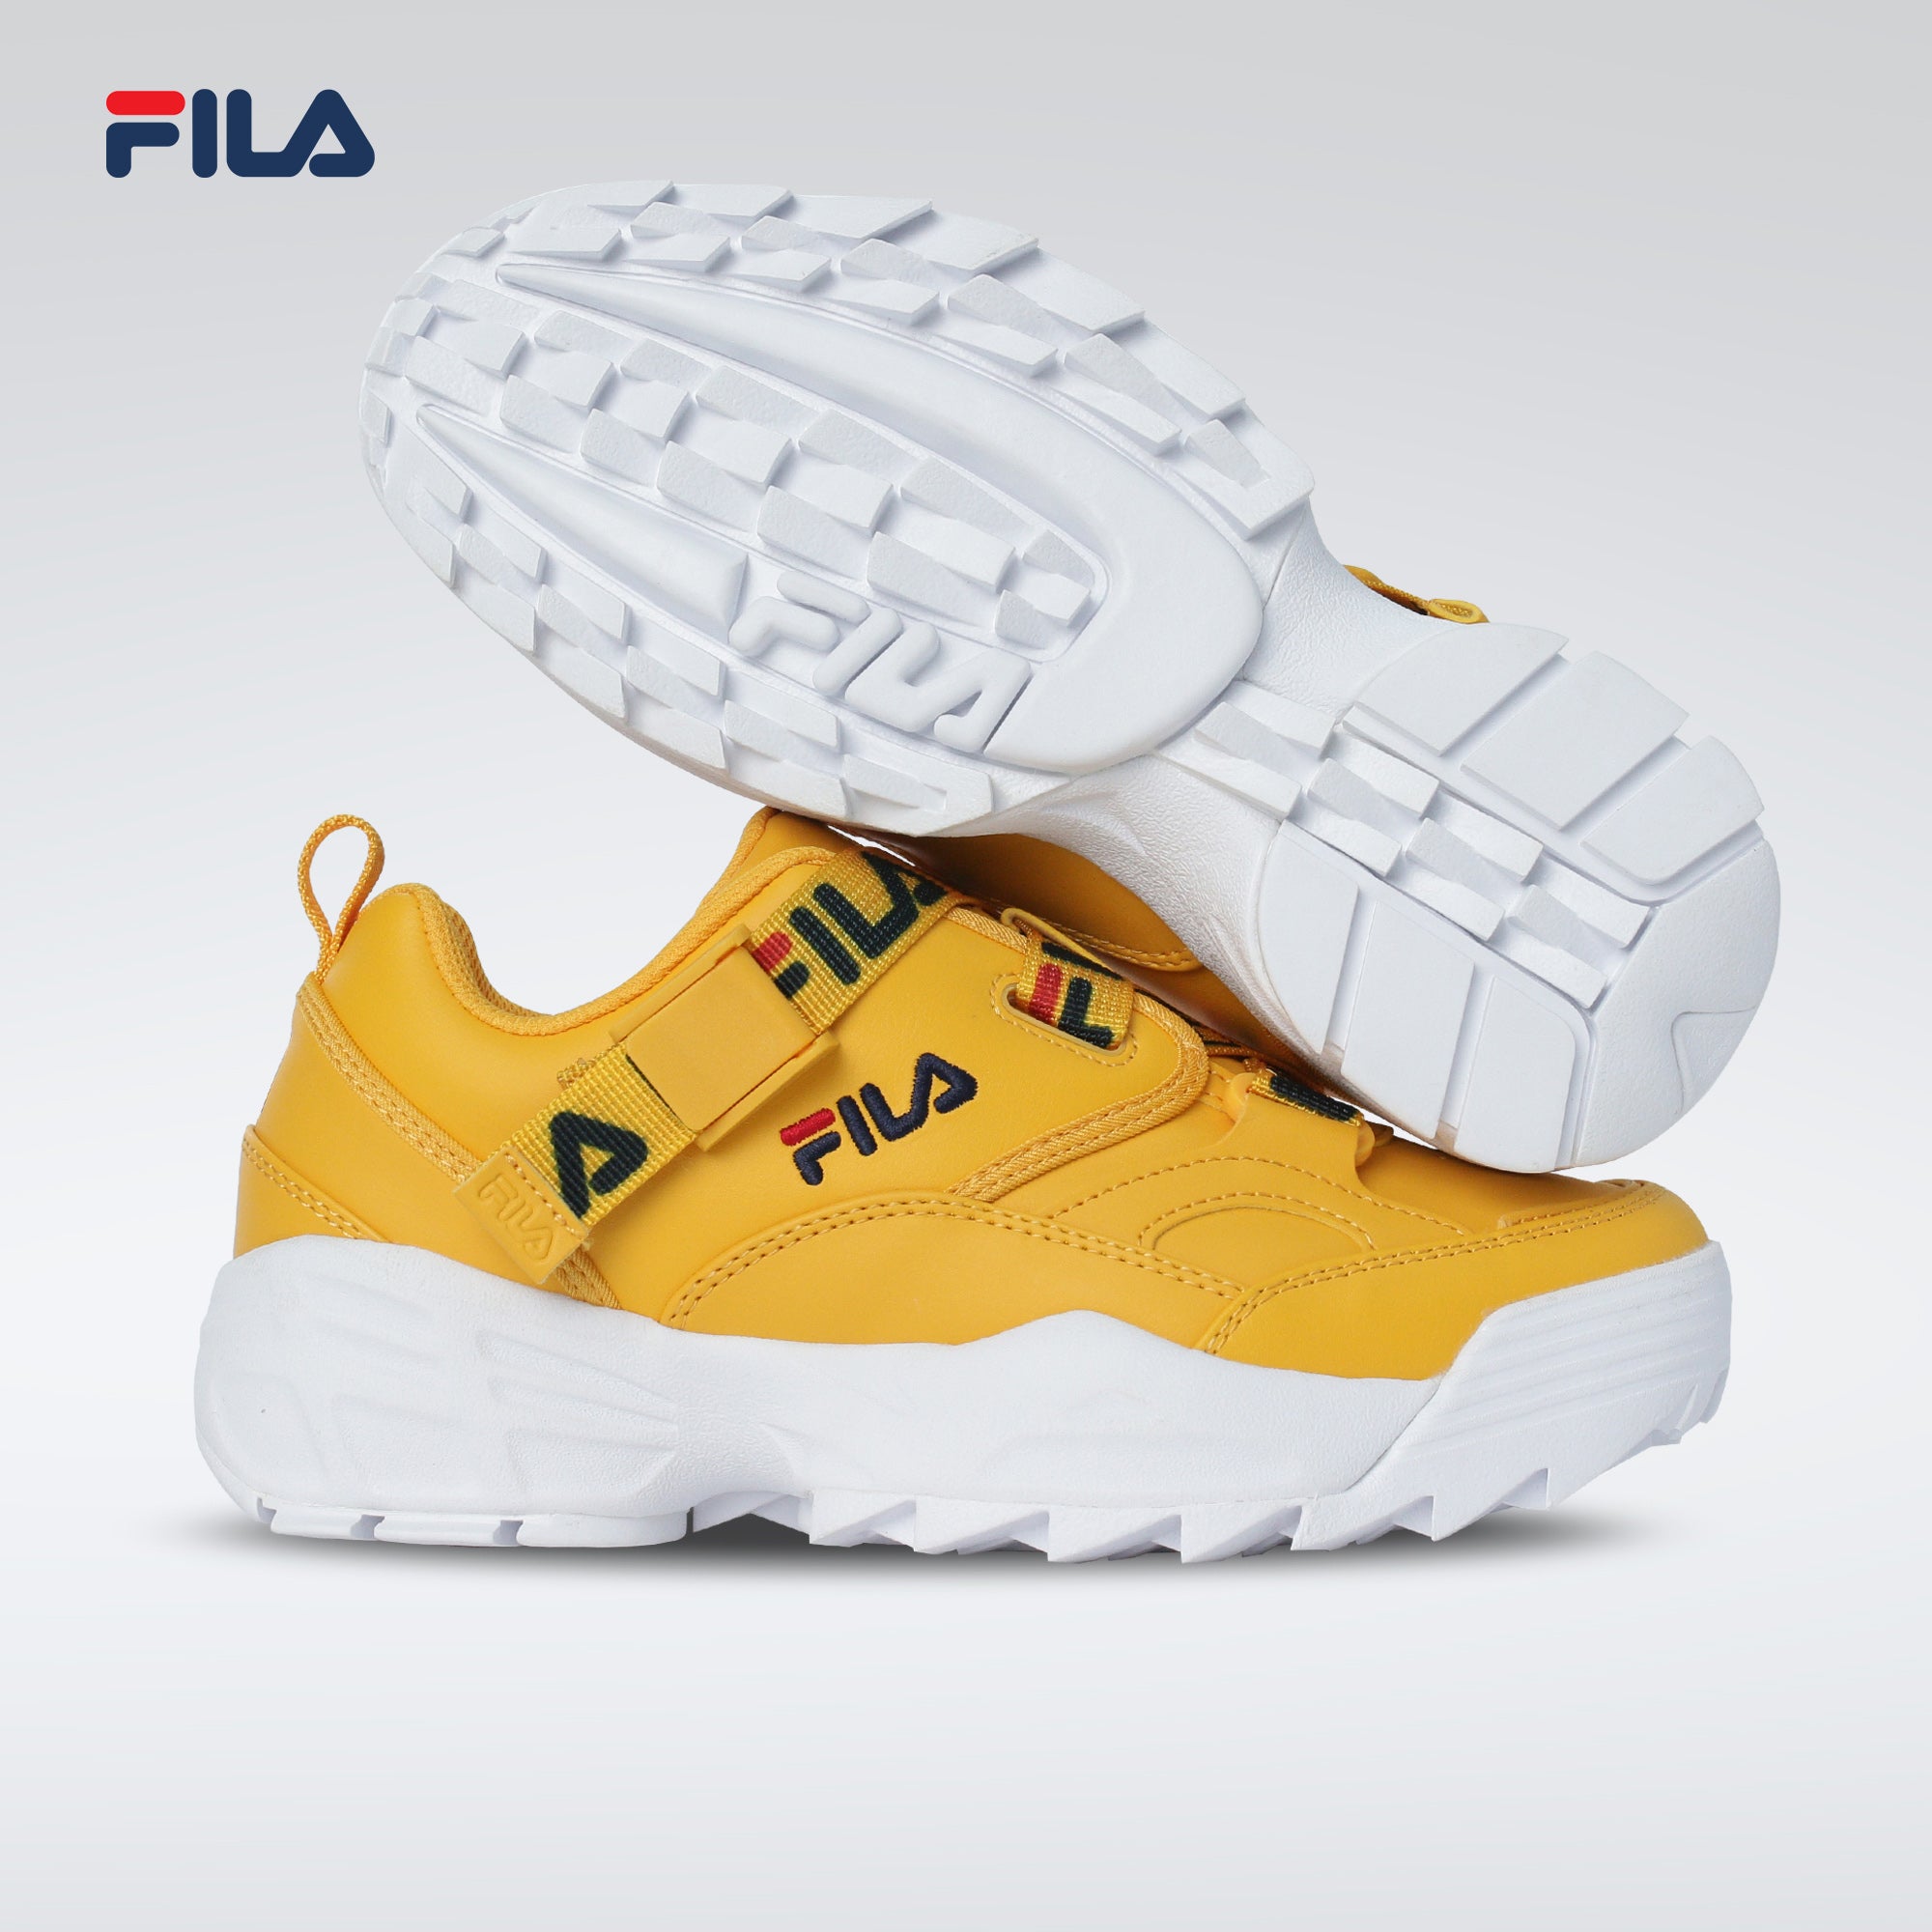 fila women's shoes yellow